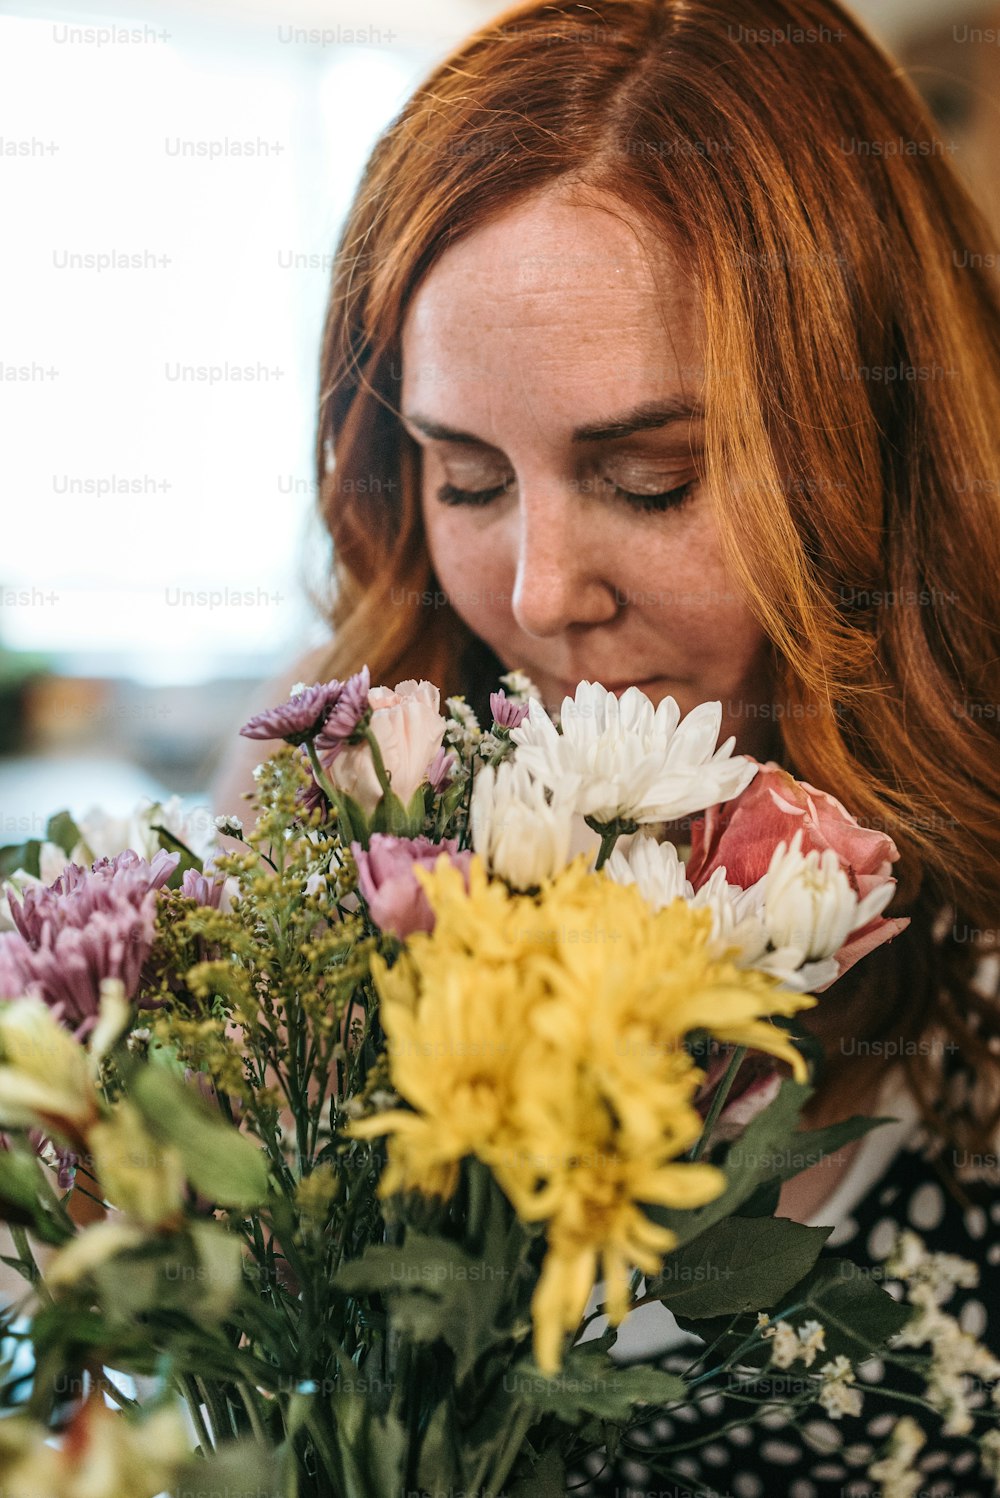 Una mujer oliendo un ramo de flores en un jarrón